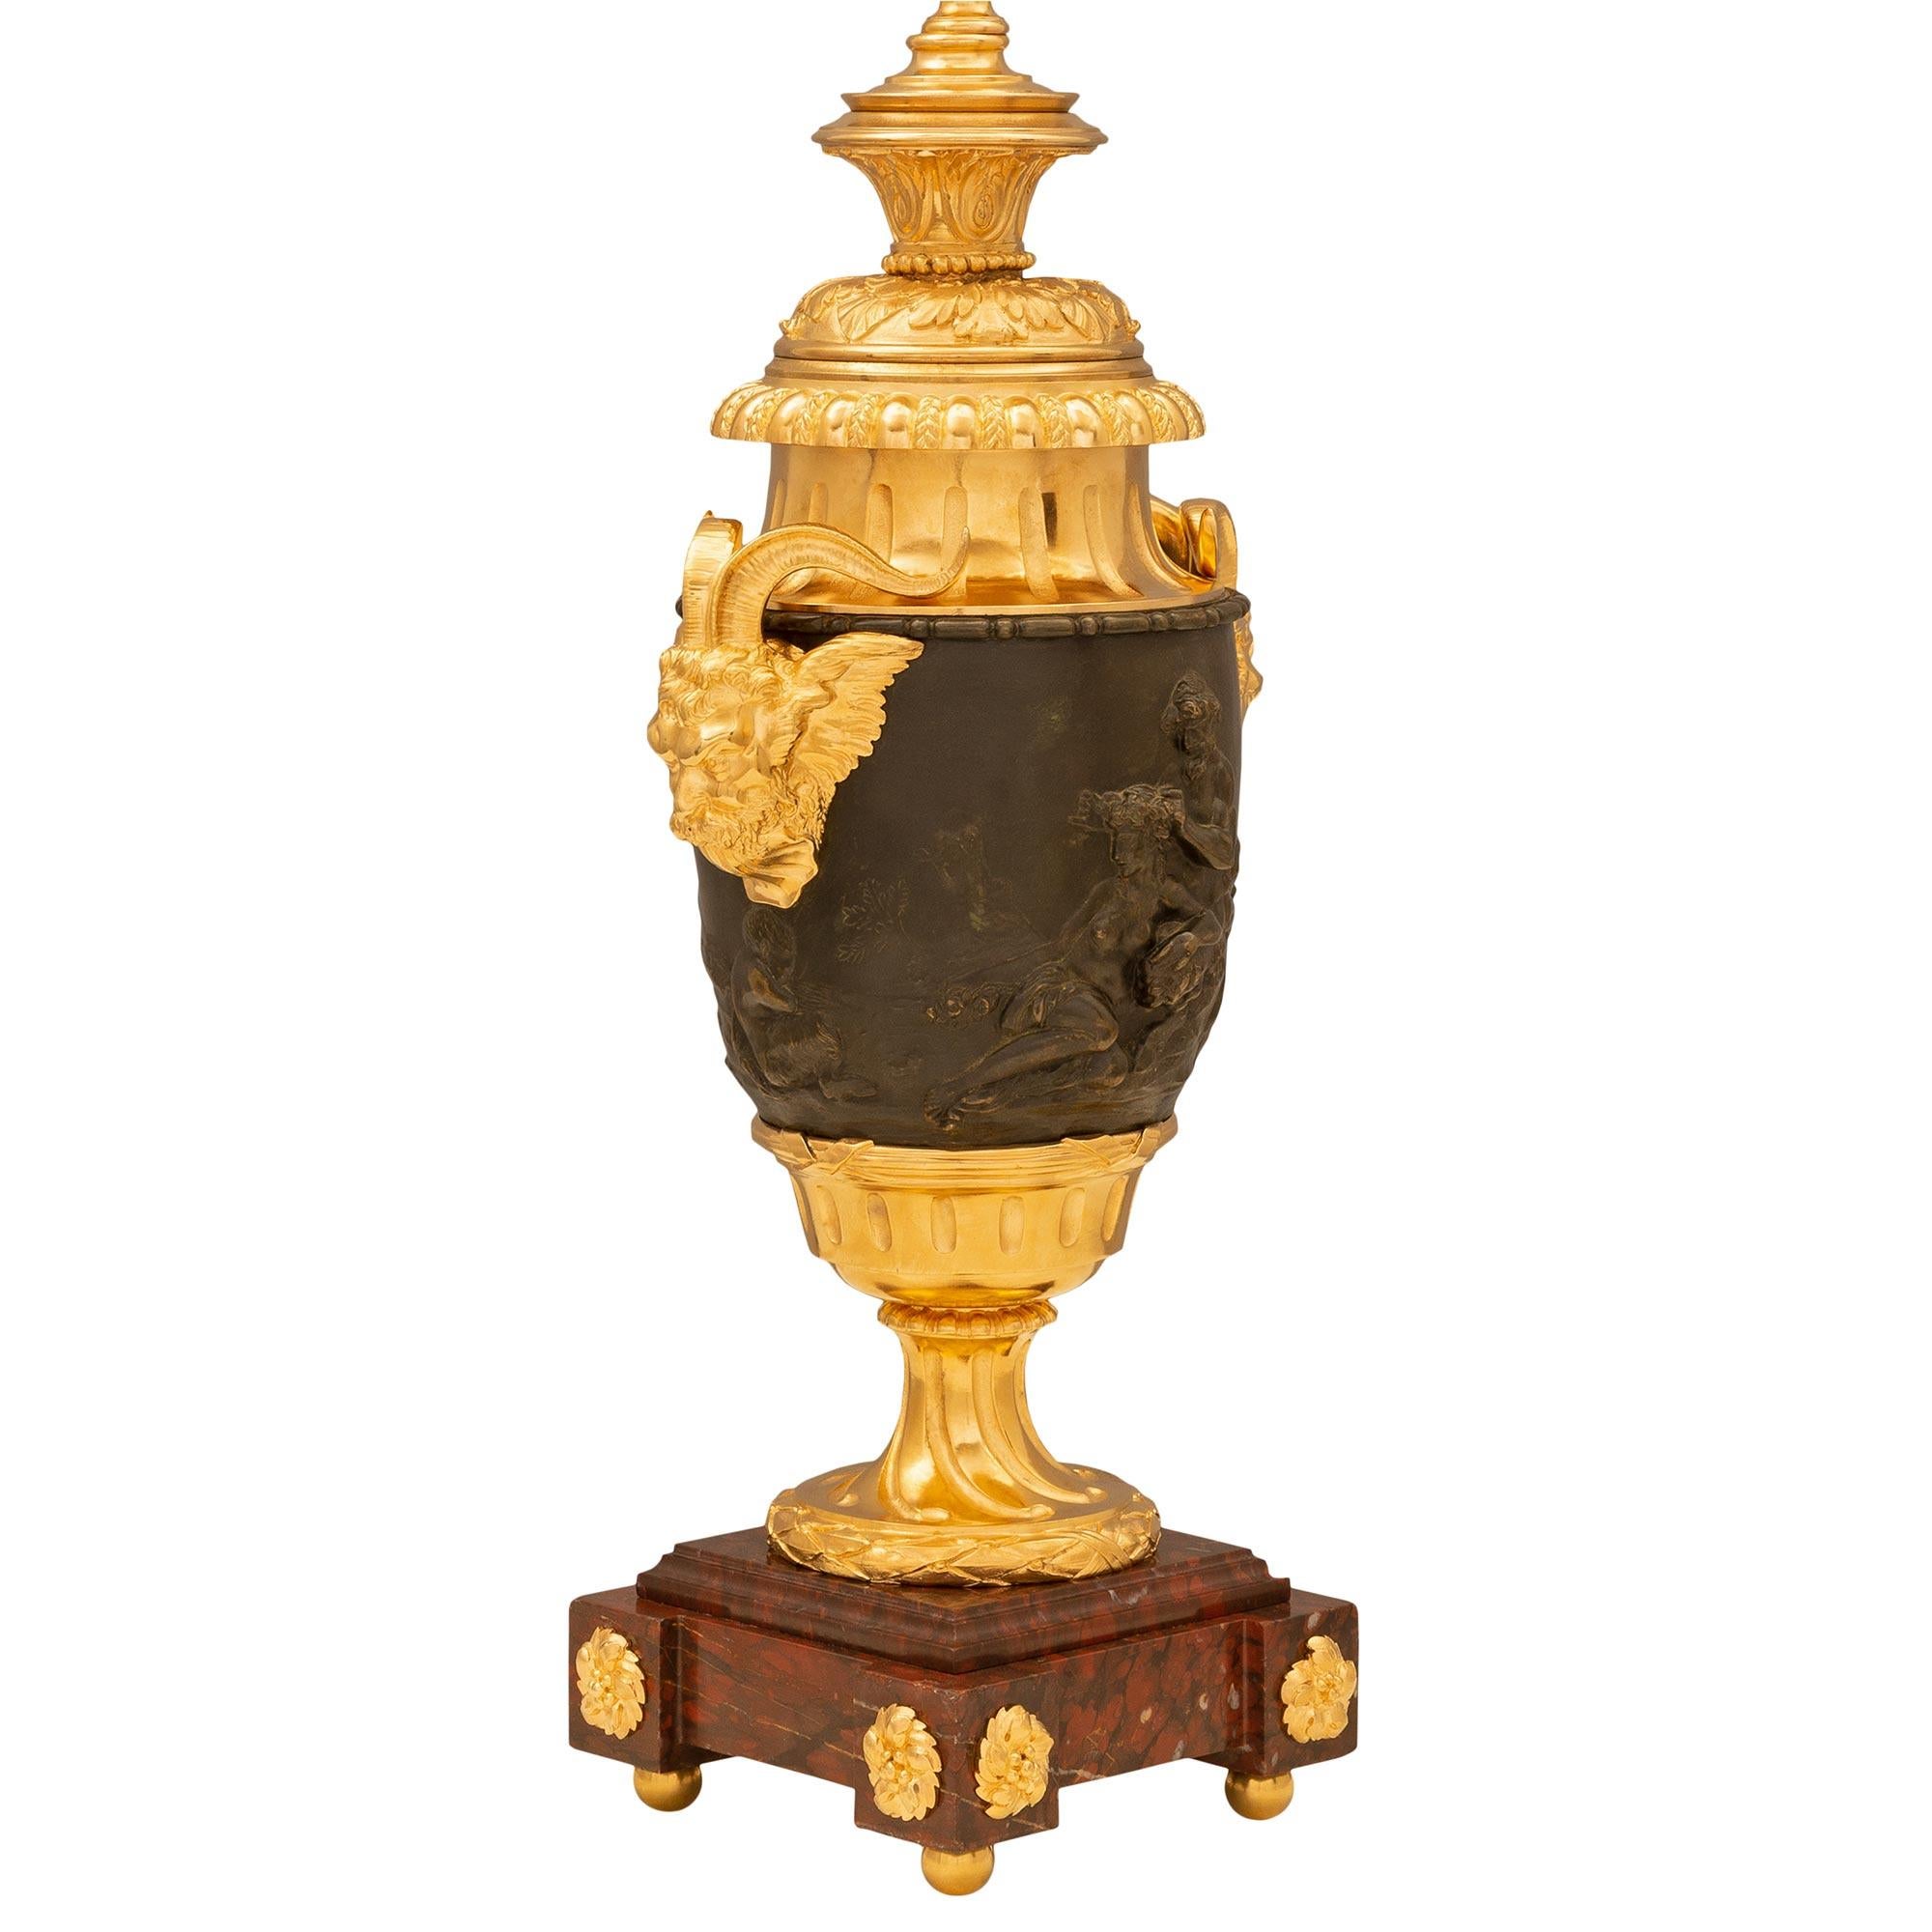 Paire impressionnante de lampes en bronze patiné, bronze doré et marbre Rouge Griotte, de style Louis XVI, datant du 19ème siècle et réalisées à la manière de Clodion. Chaque lampe est surélevée par une base carrée en marbre Rouge Griotte avec des